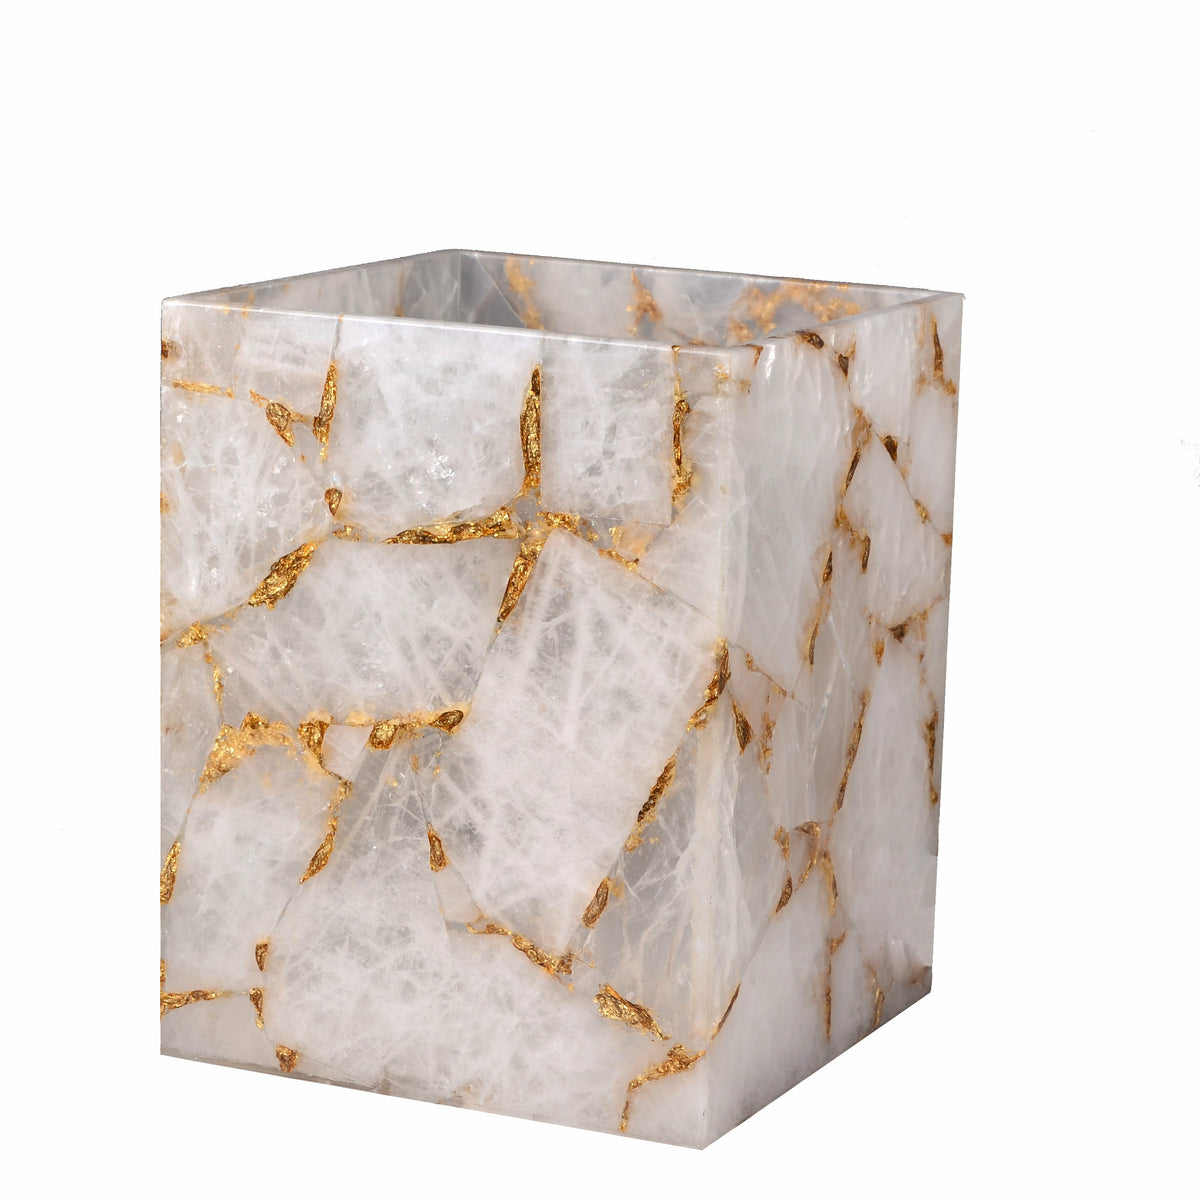 Mike and Ally Taj Premium Gemstone Bath Accessories Wastebasket Rock Crystal w/ Gold Foil